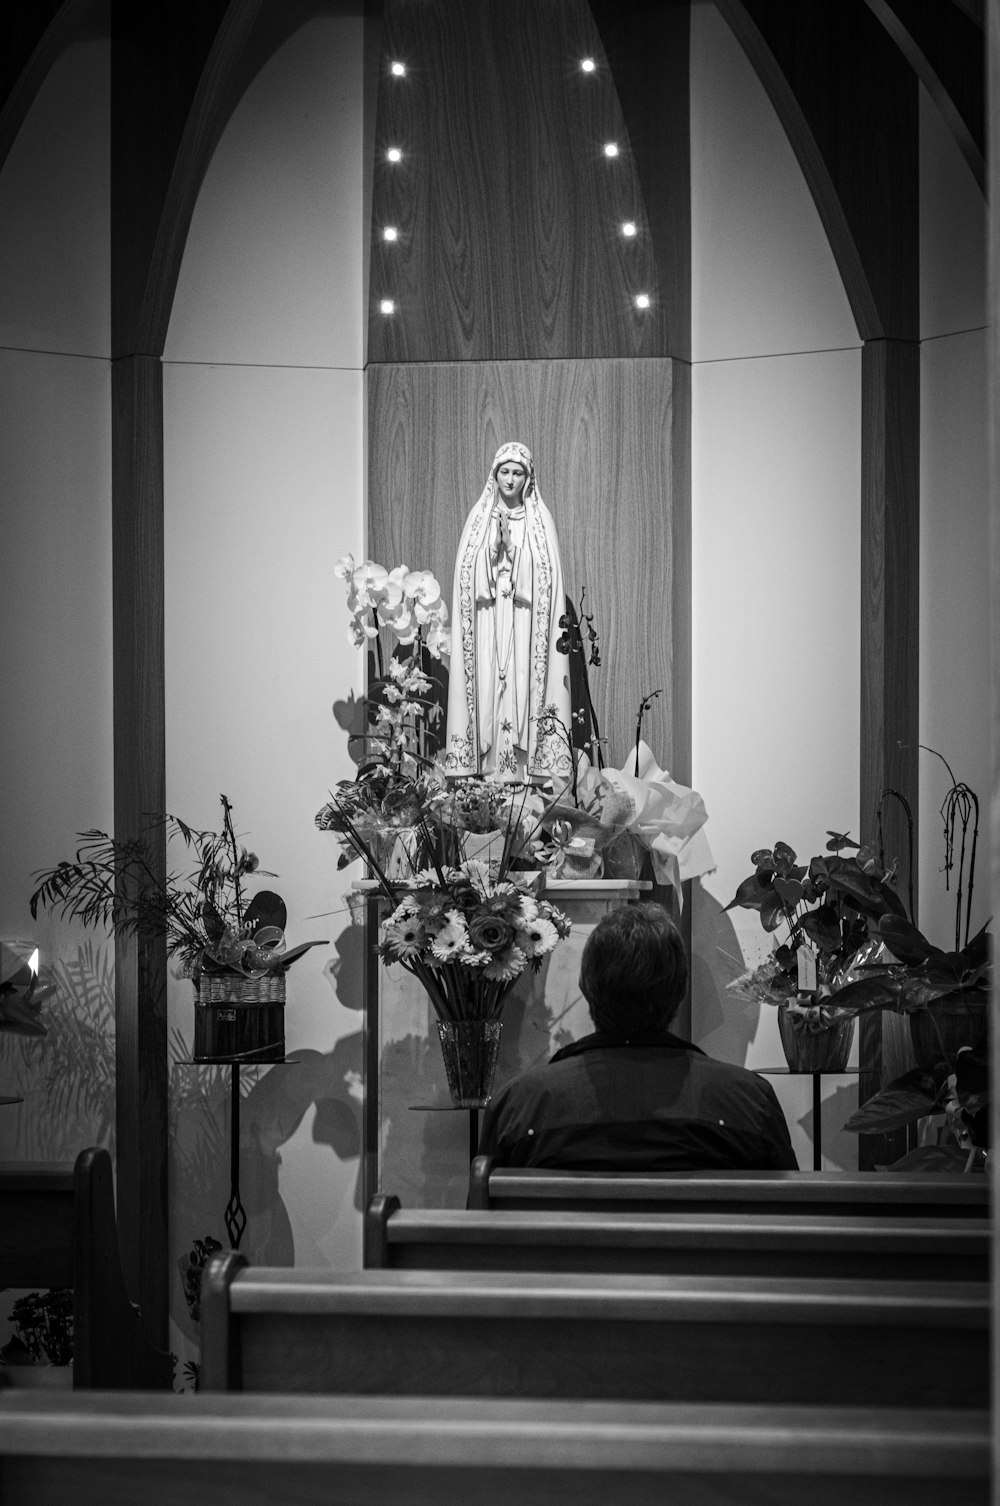 fotografia em tons de cinza da pessoa sentada na frente da figura religiosa